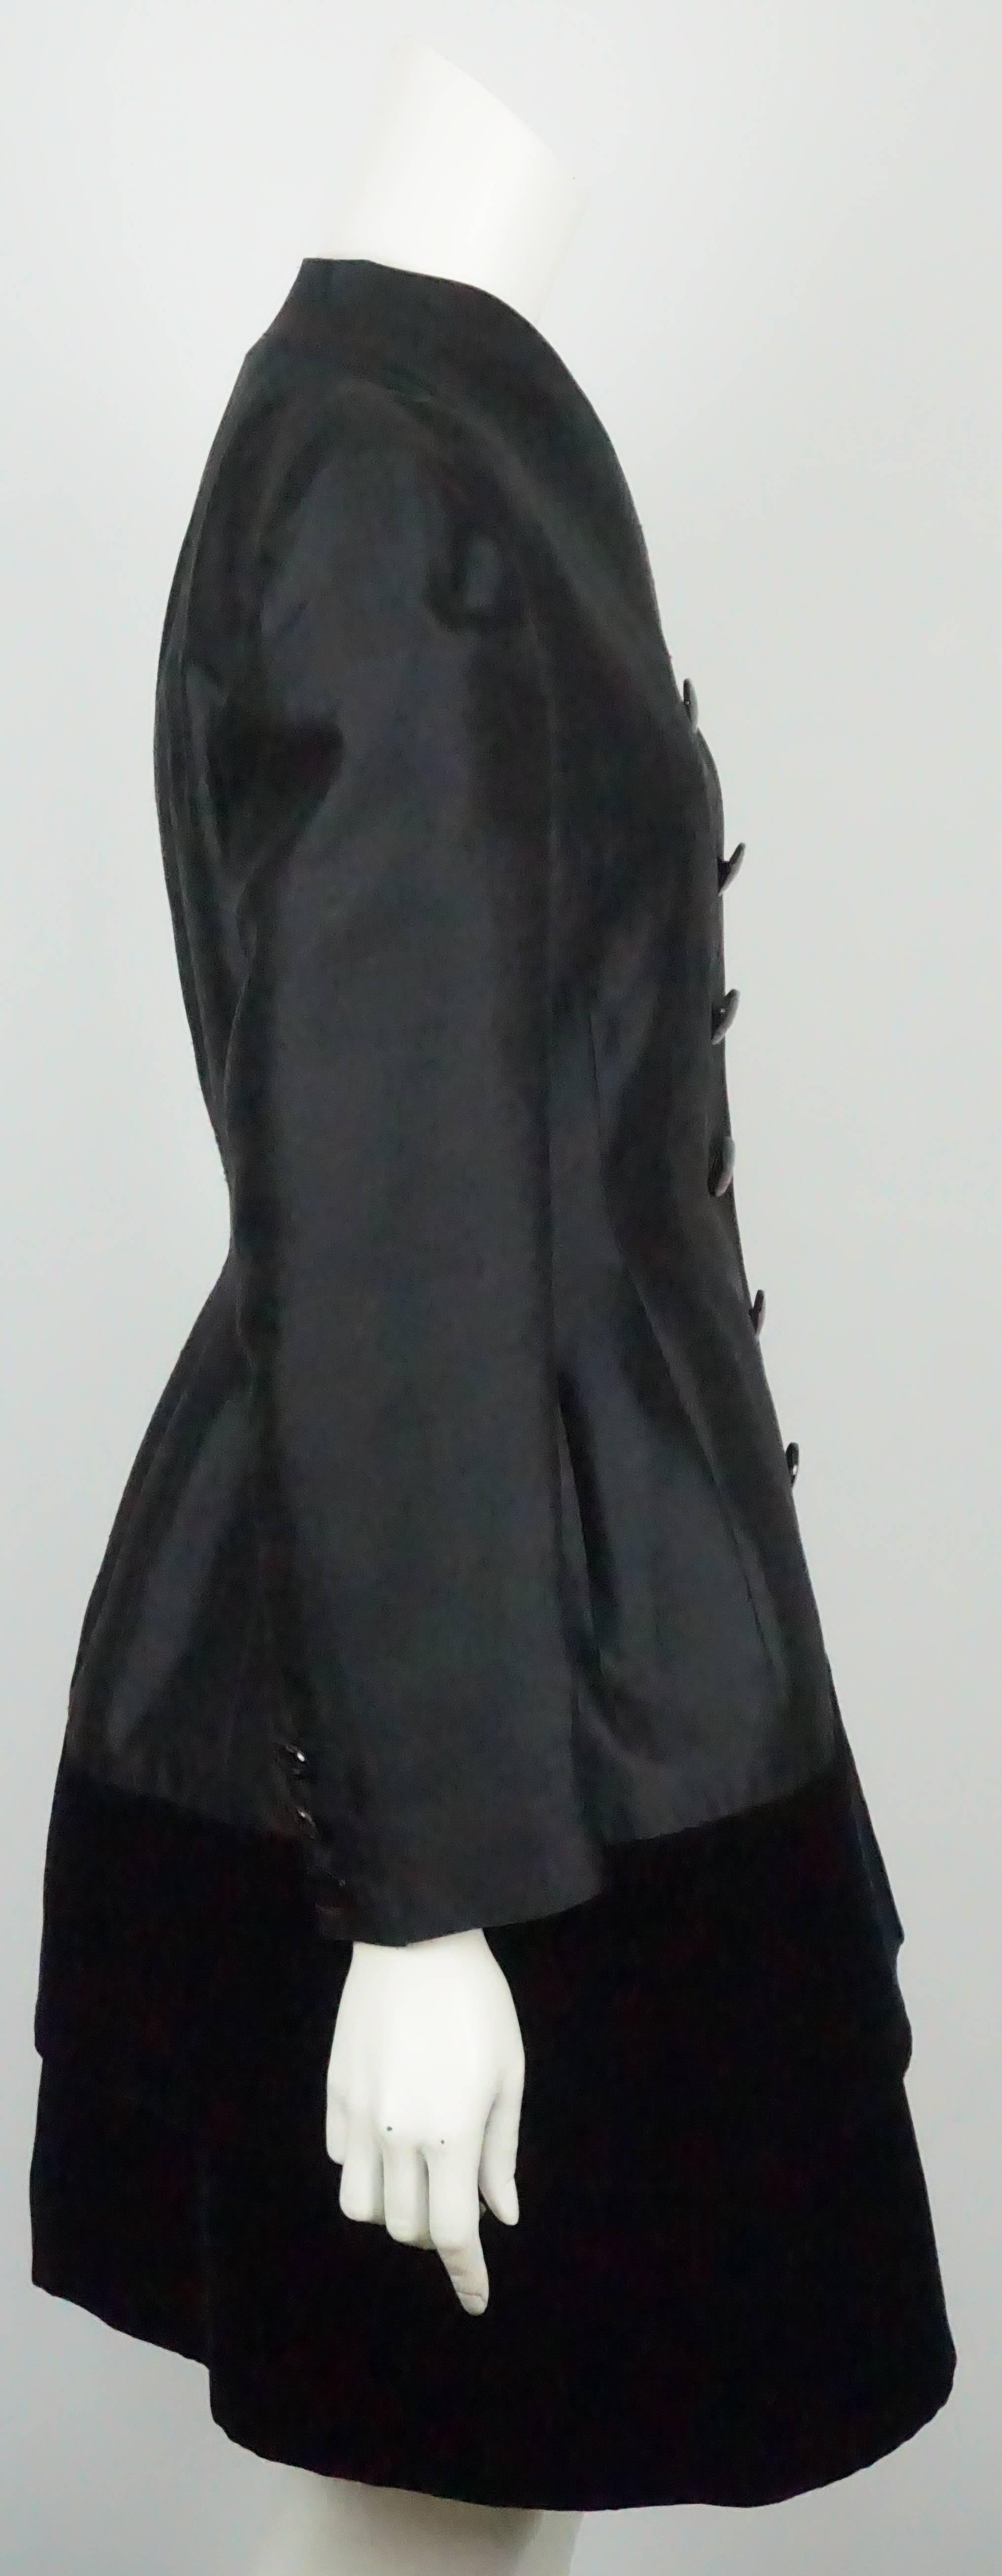 Valentino - Robe en soie et velours noir avec manteau - 10 - Circa 80's  Cette robe et ce manteau vintage spectaculaires et intemporels sont en excellent état, à l'exception d'un bouton manquant sur le manteau. La robe en soie est sans manches et